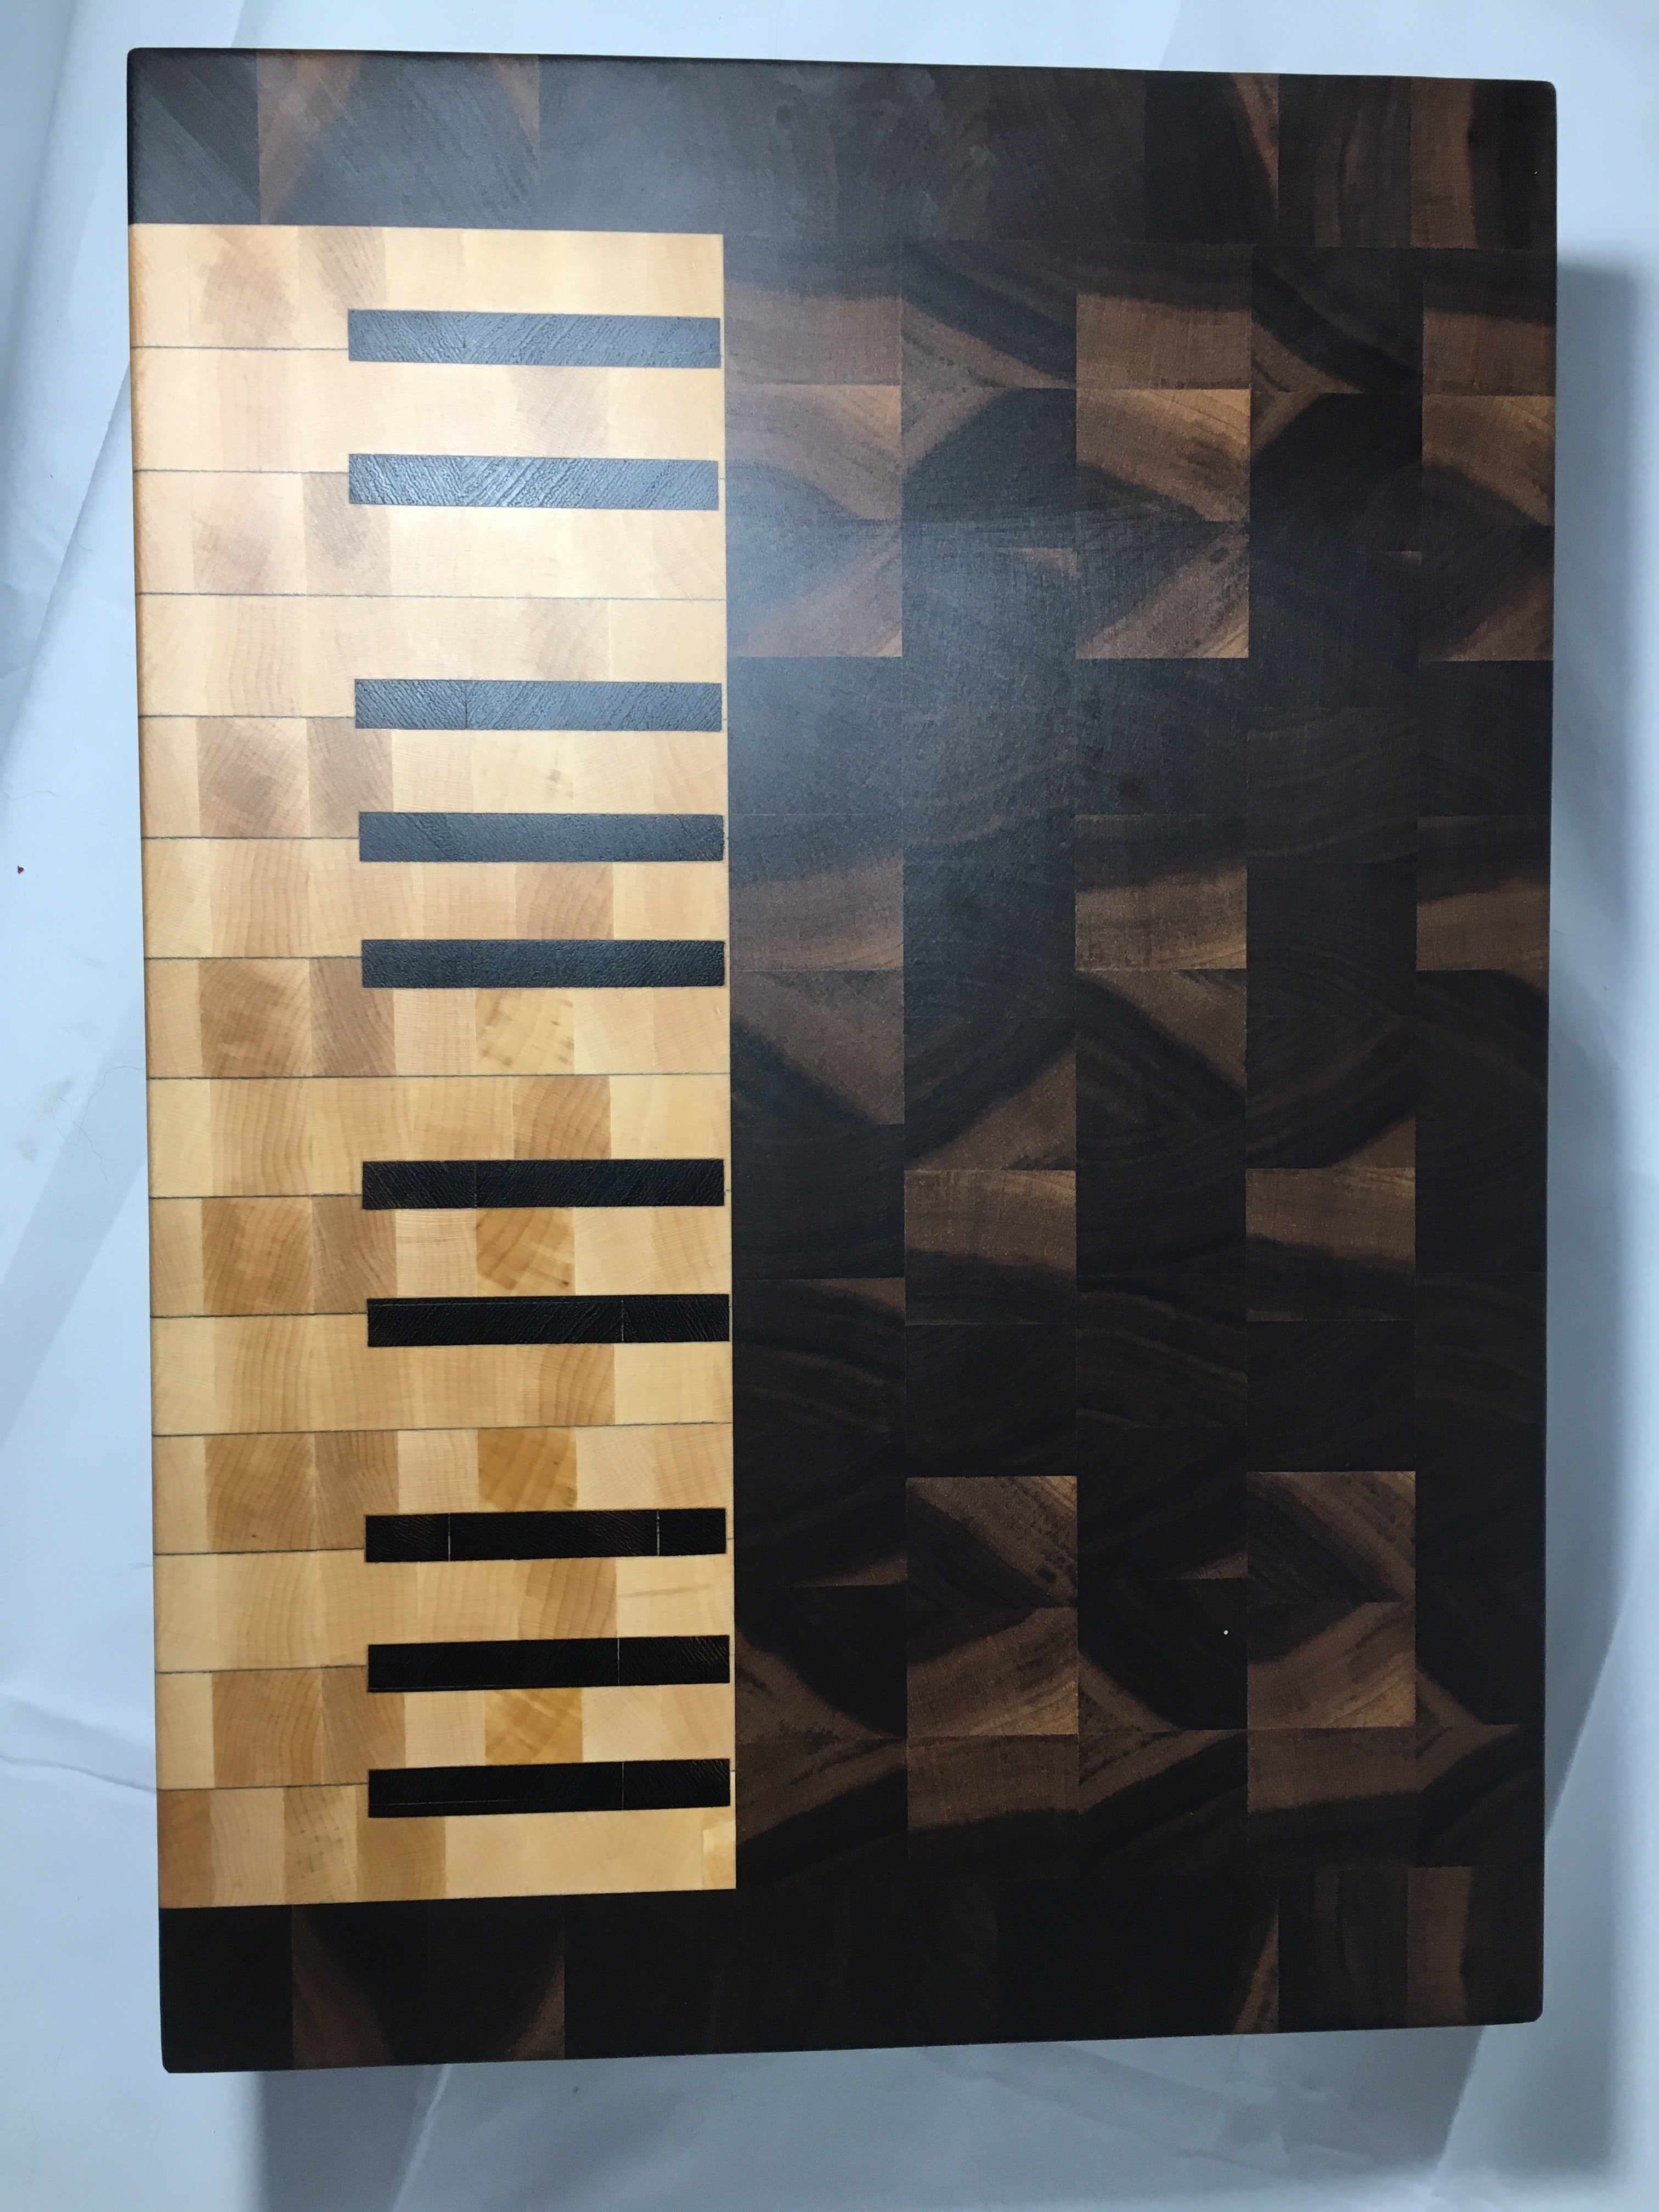 Piano cutting board